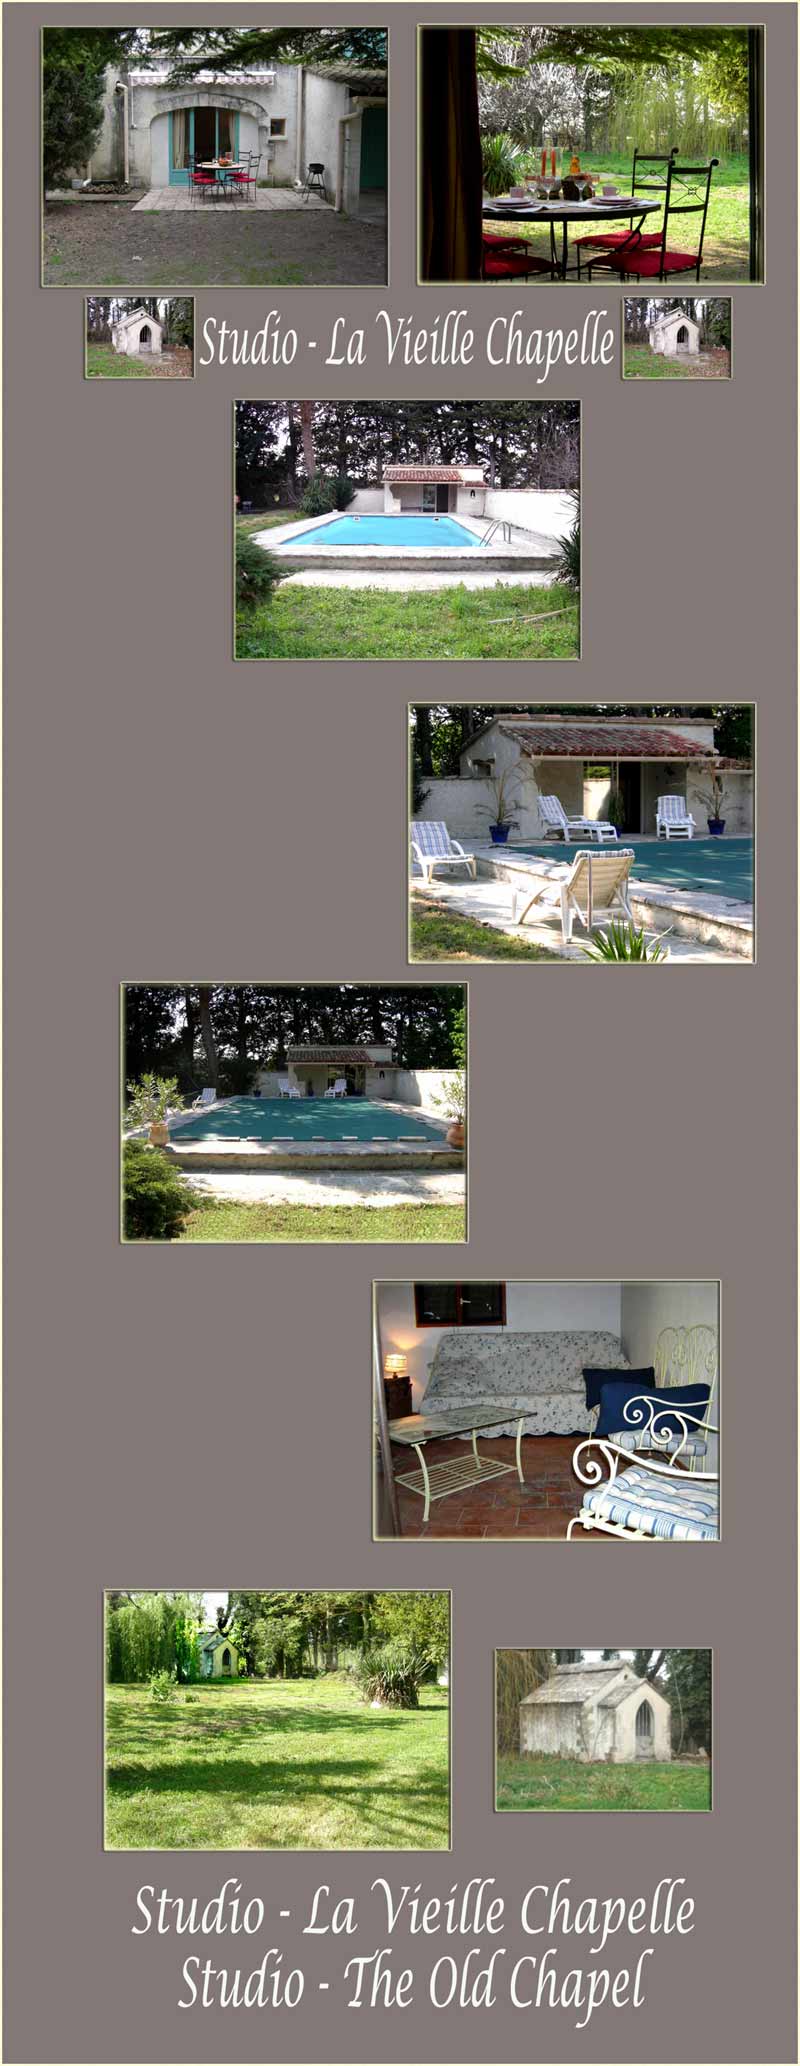 Provence studio avec piscine, grand terrain, vieille chapelle - piscine, pool house